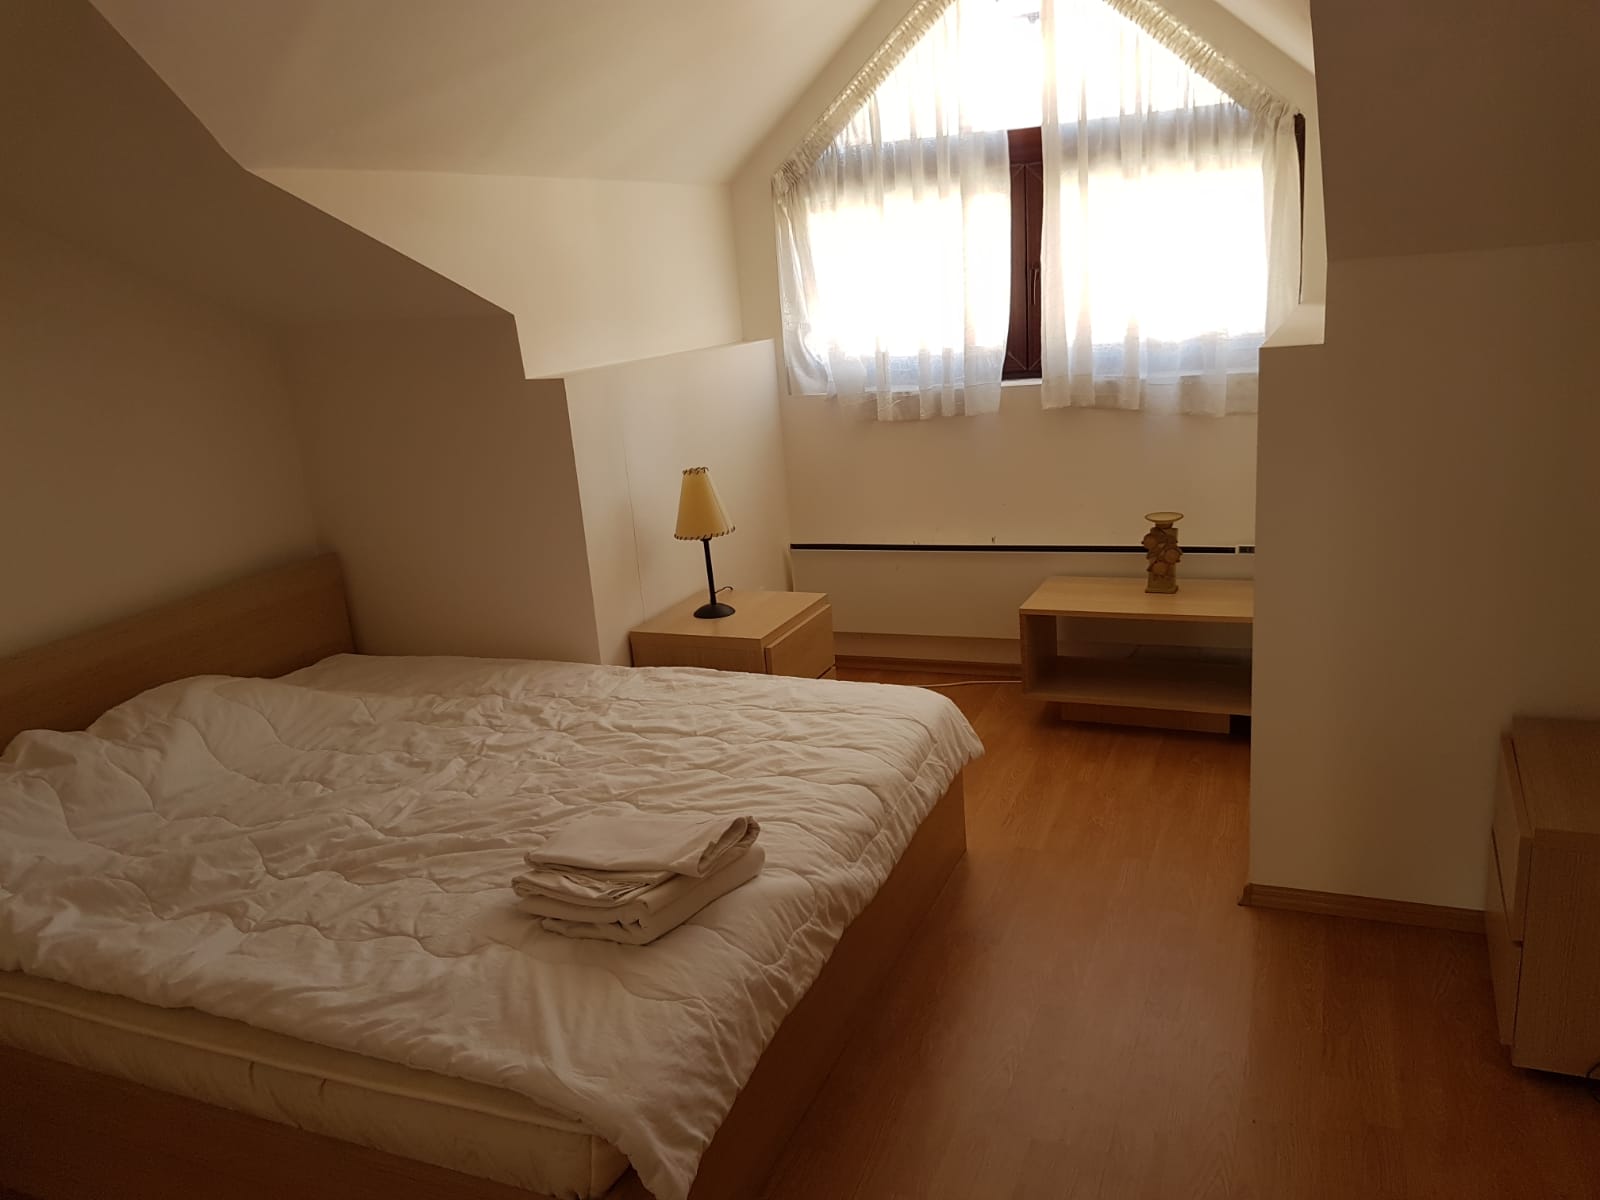 Двустаен апартамент за отдаване под наем с гледка към Пирин планина в Банско